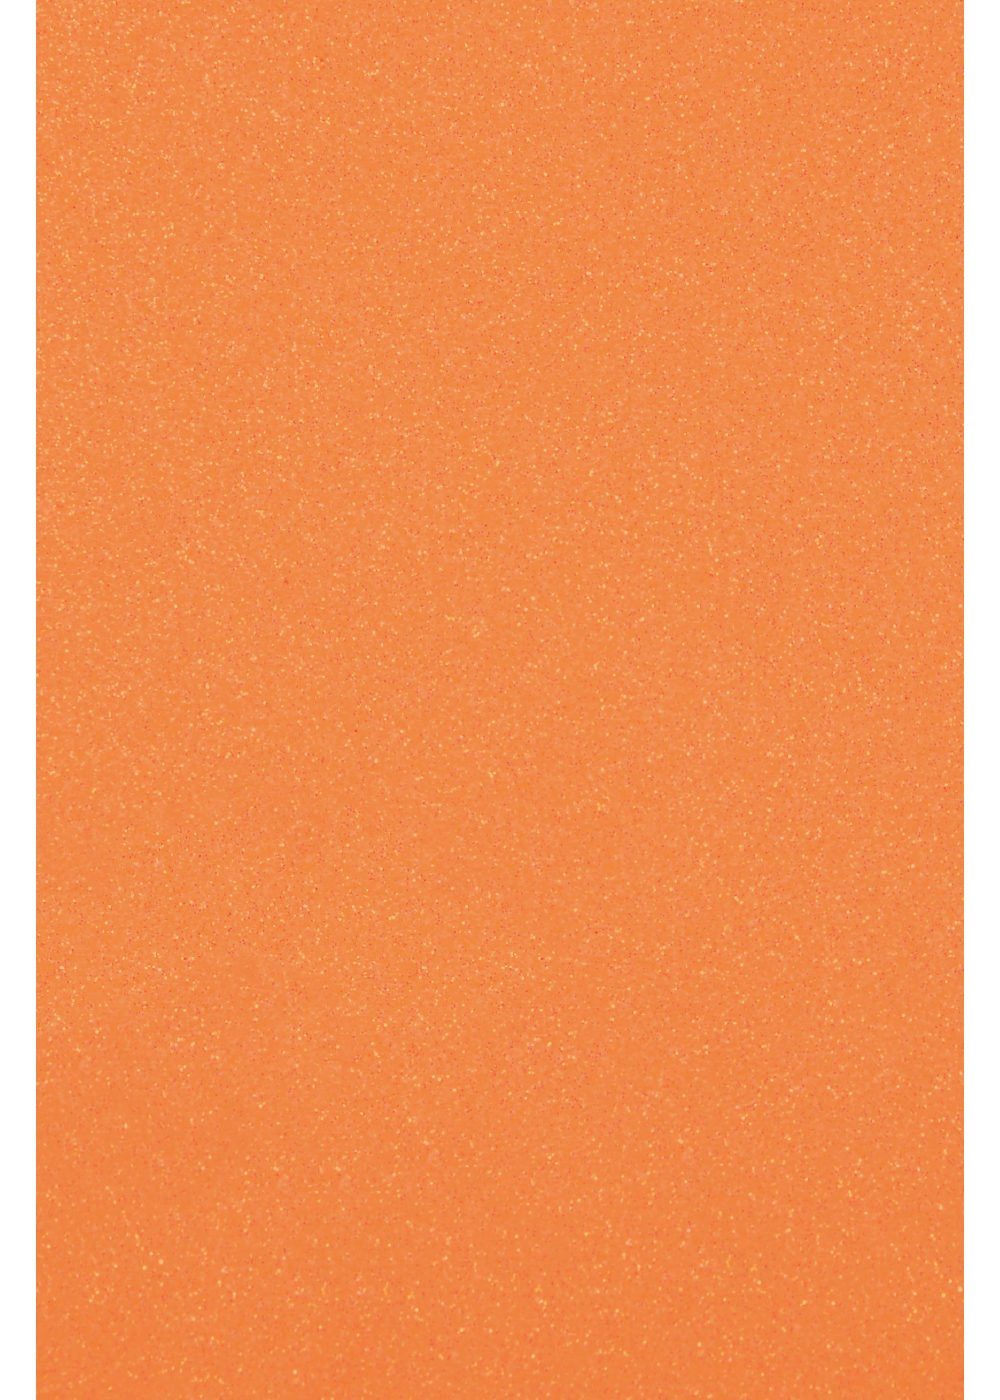 Hilltop Transparentpapier Glitzer Transferfolie/Textilfolie zum Neon Aufbügeln, zum Plottern perfekt Orange